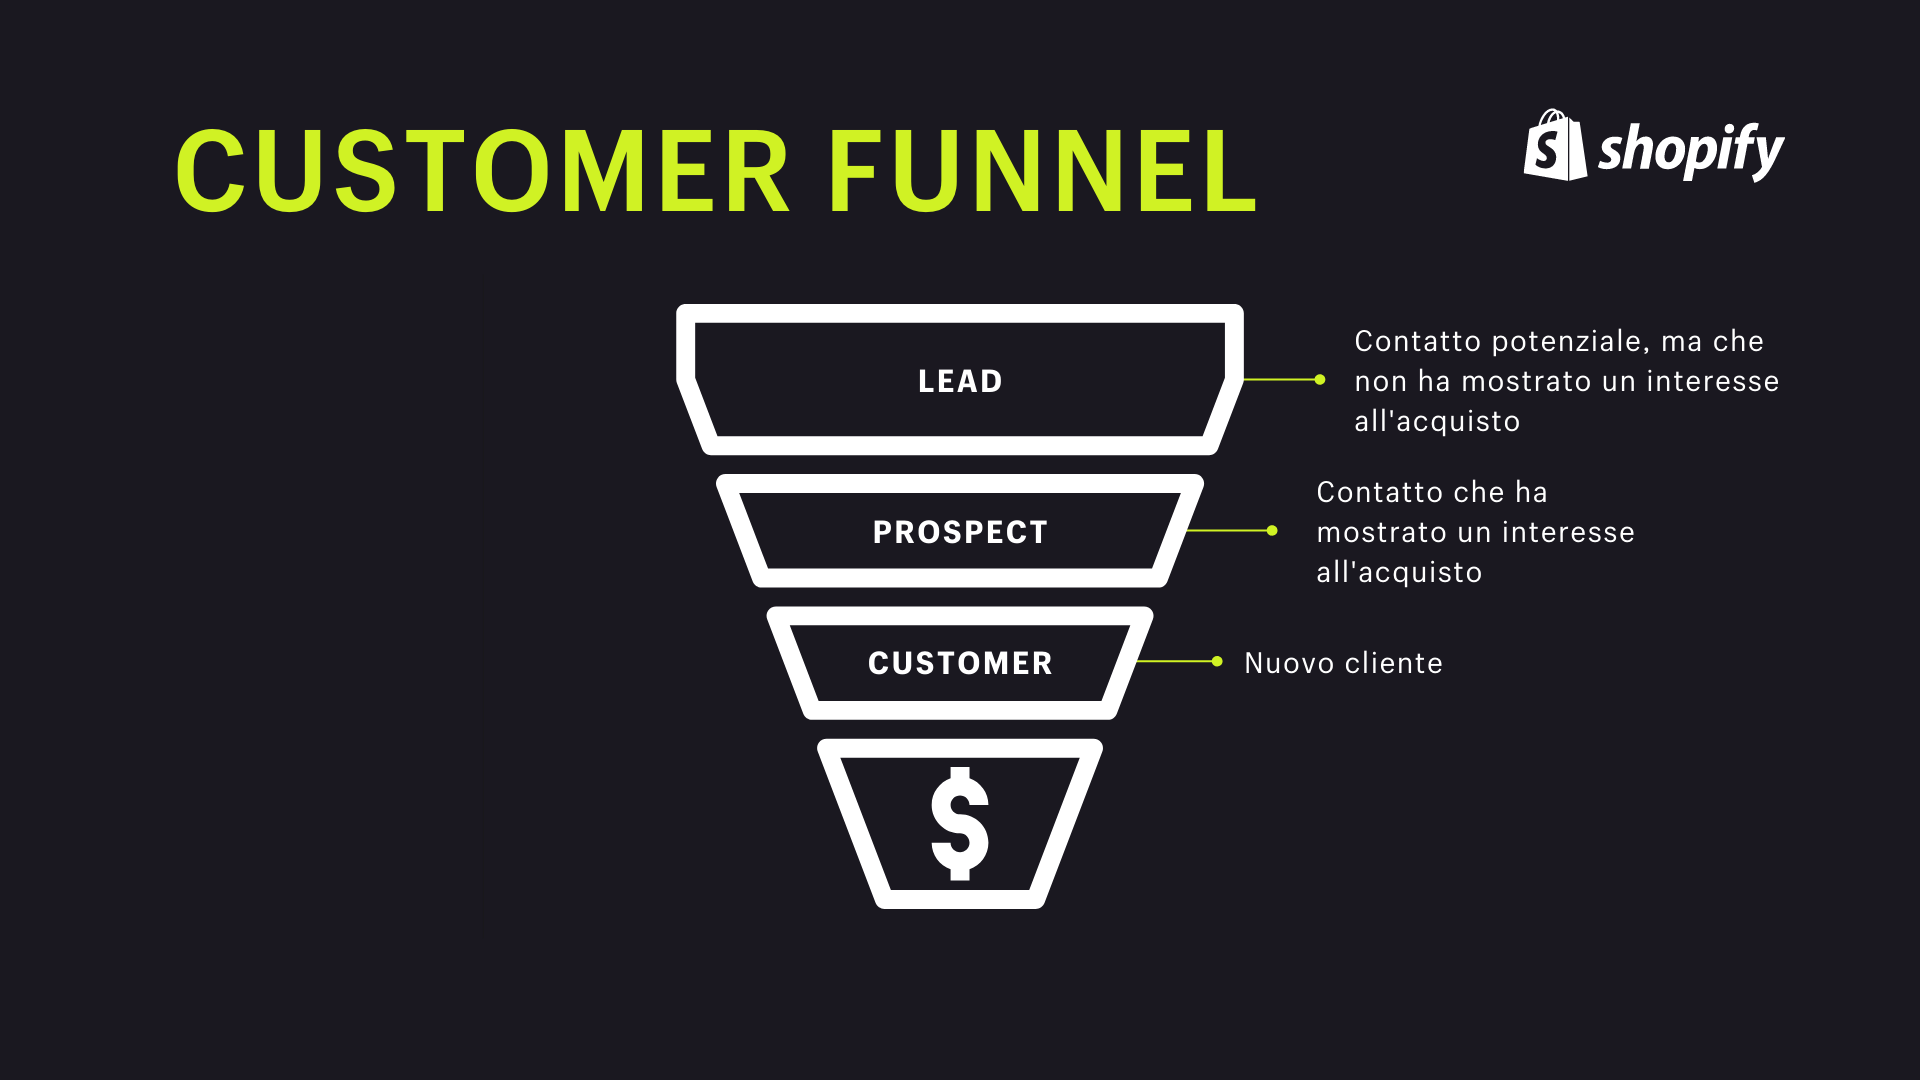 Infografica del funnel cliente (customer funnel) con lead, prospect e customer